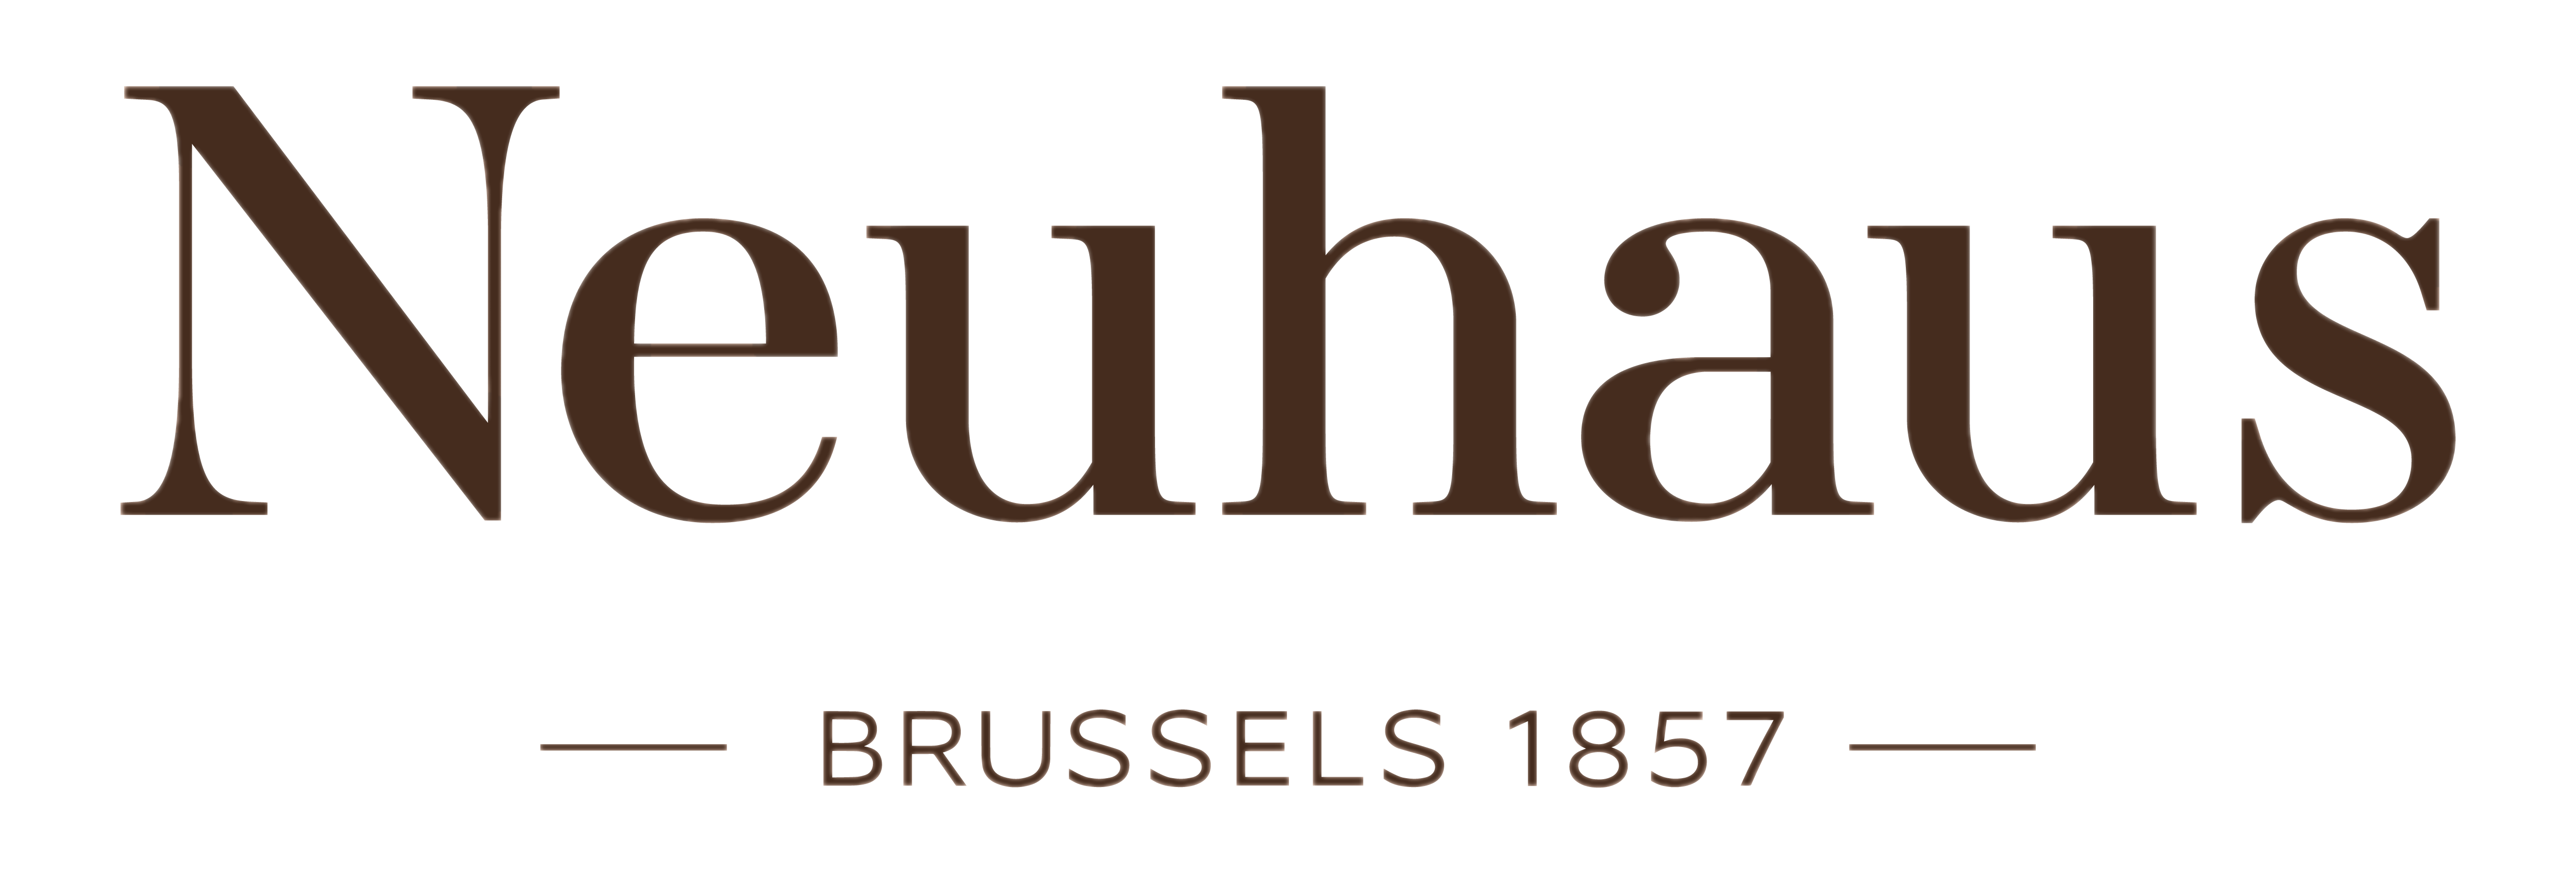 Neuhaus Logo PNG images